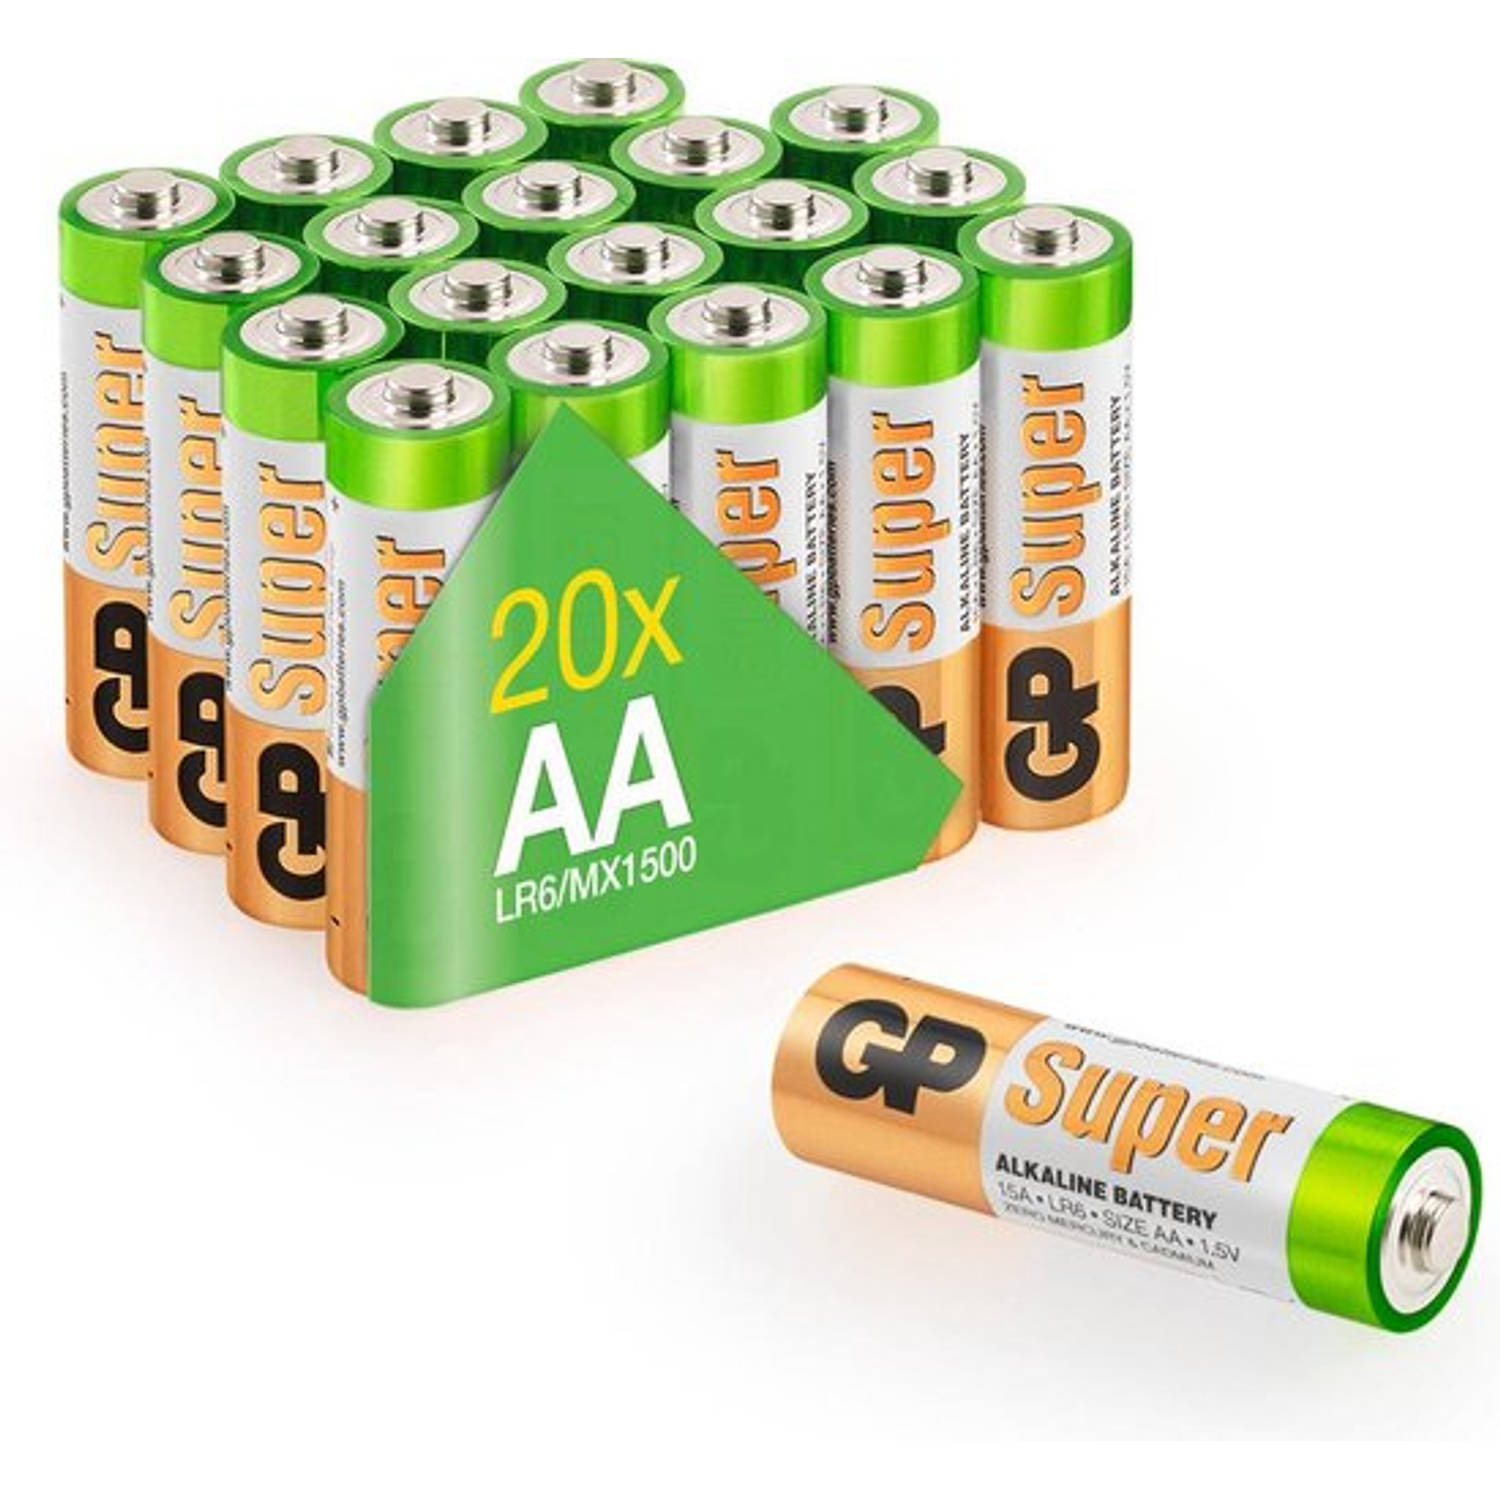 GP Super Alkaline AA batterijen - 20 stuks